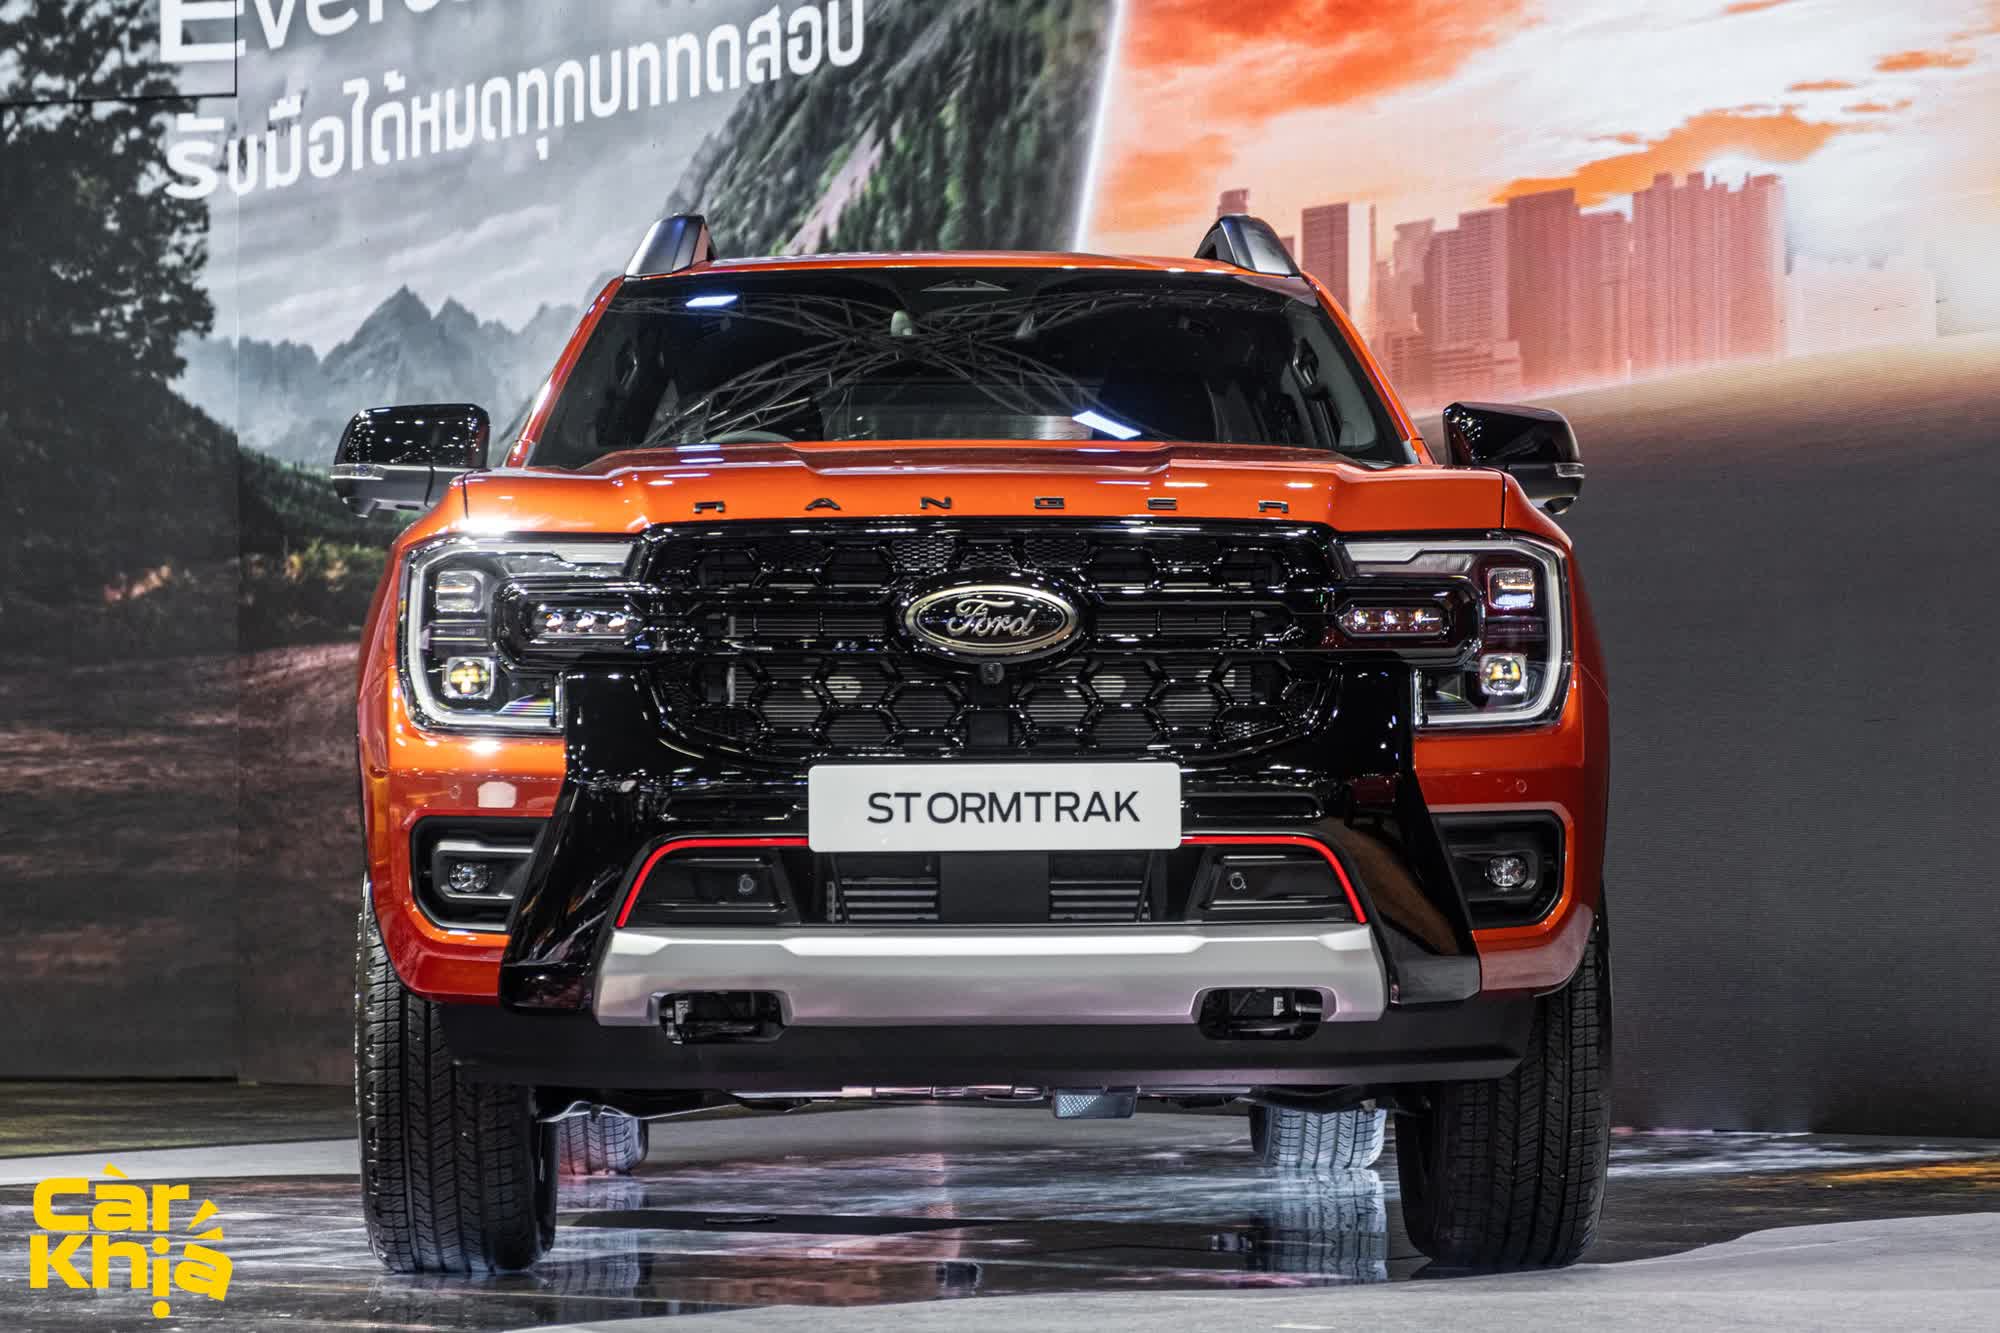 Chi tiết Ford Ranger Stormtrak sắp bán ở Việt Nam: Đẹp hơn Wildtrak, sẽ lại là vua doanh số bán tải - Ảnh 2.